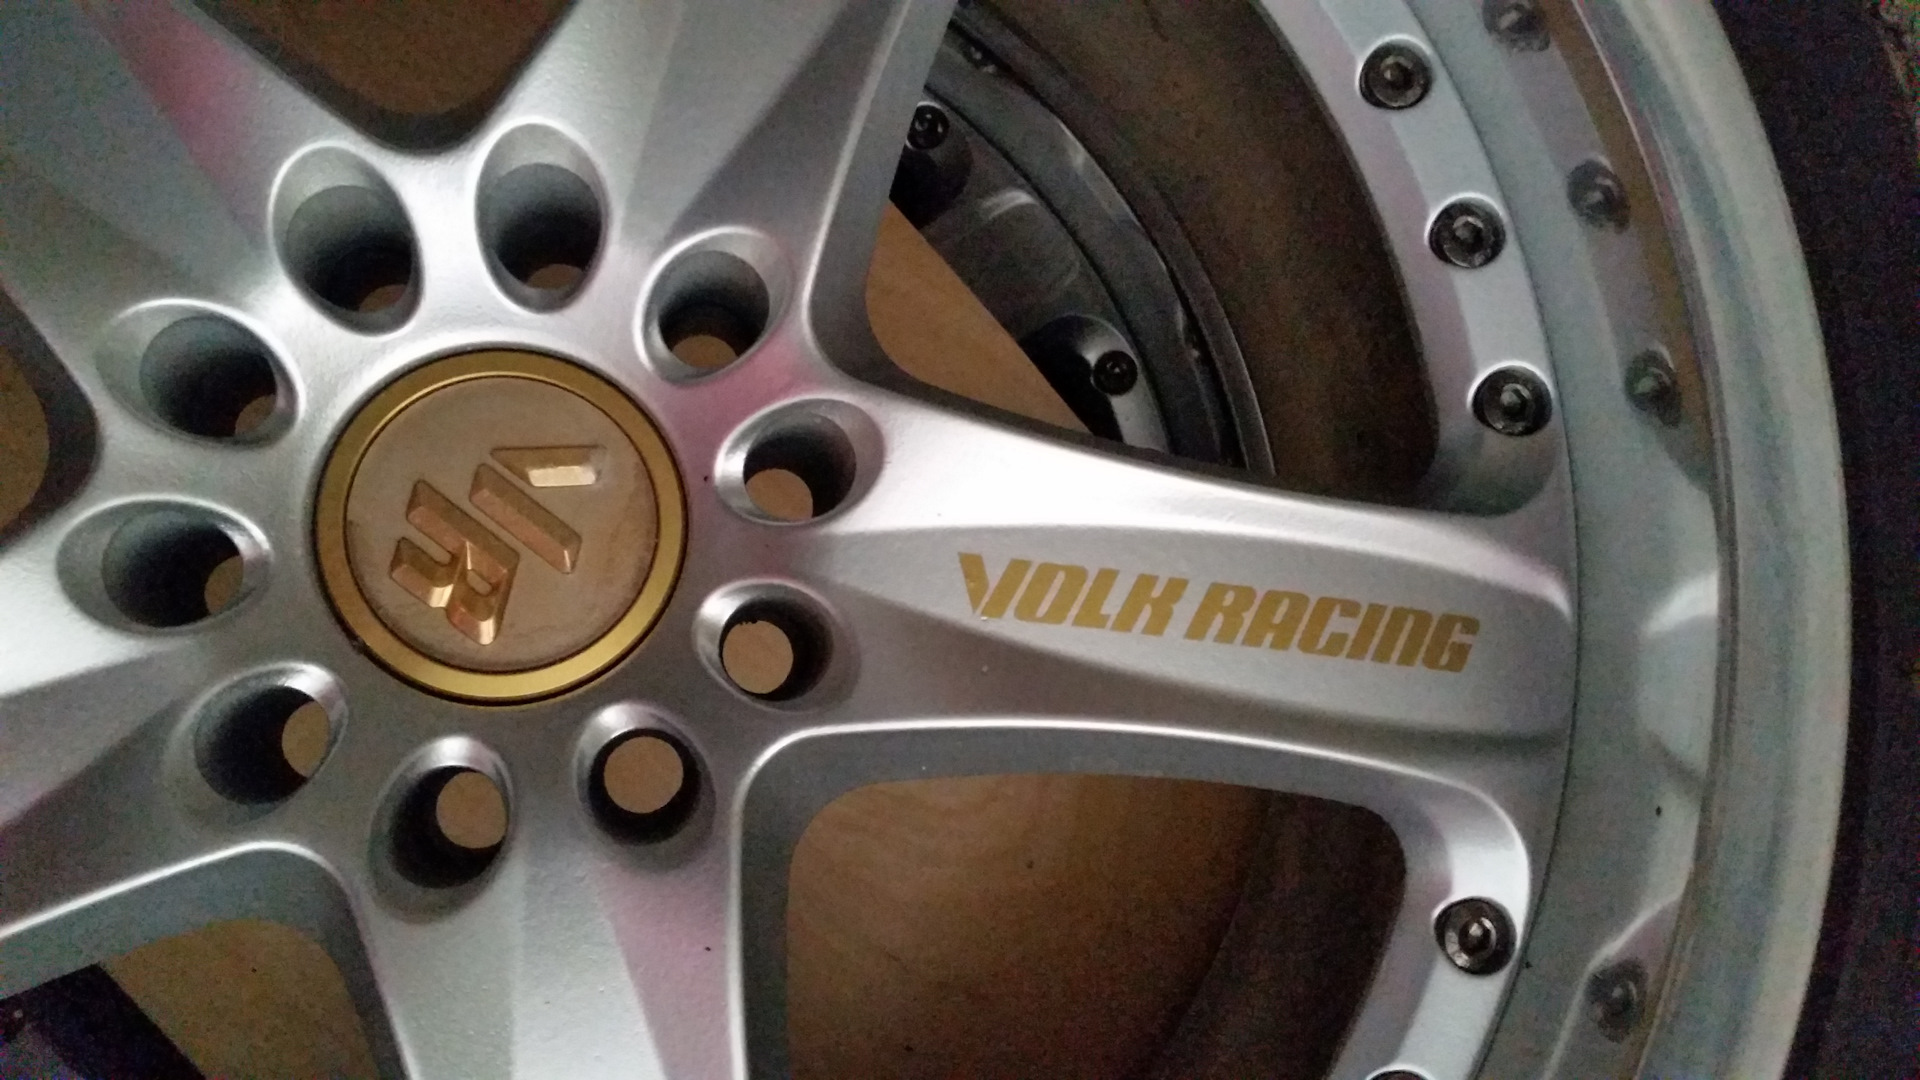 03 av. Rays Volk Racing av3. Rays Volk Racing r17 av3 Kia. Rays Volk Racing VR av3. Volk Racing Wheel r19 Center Lock.